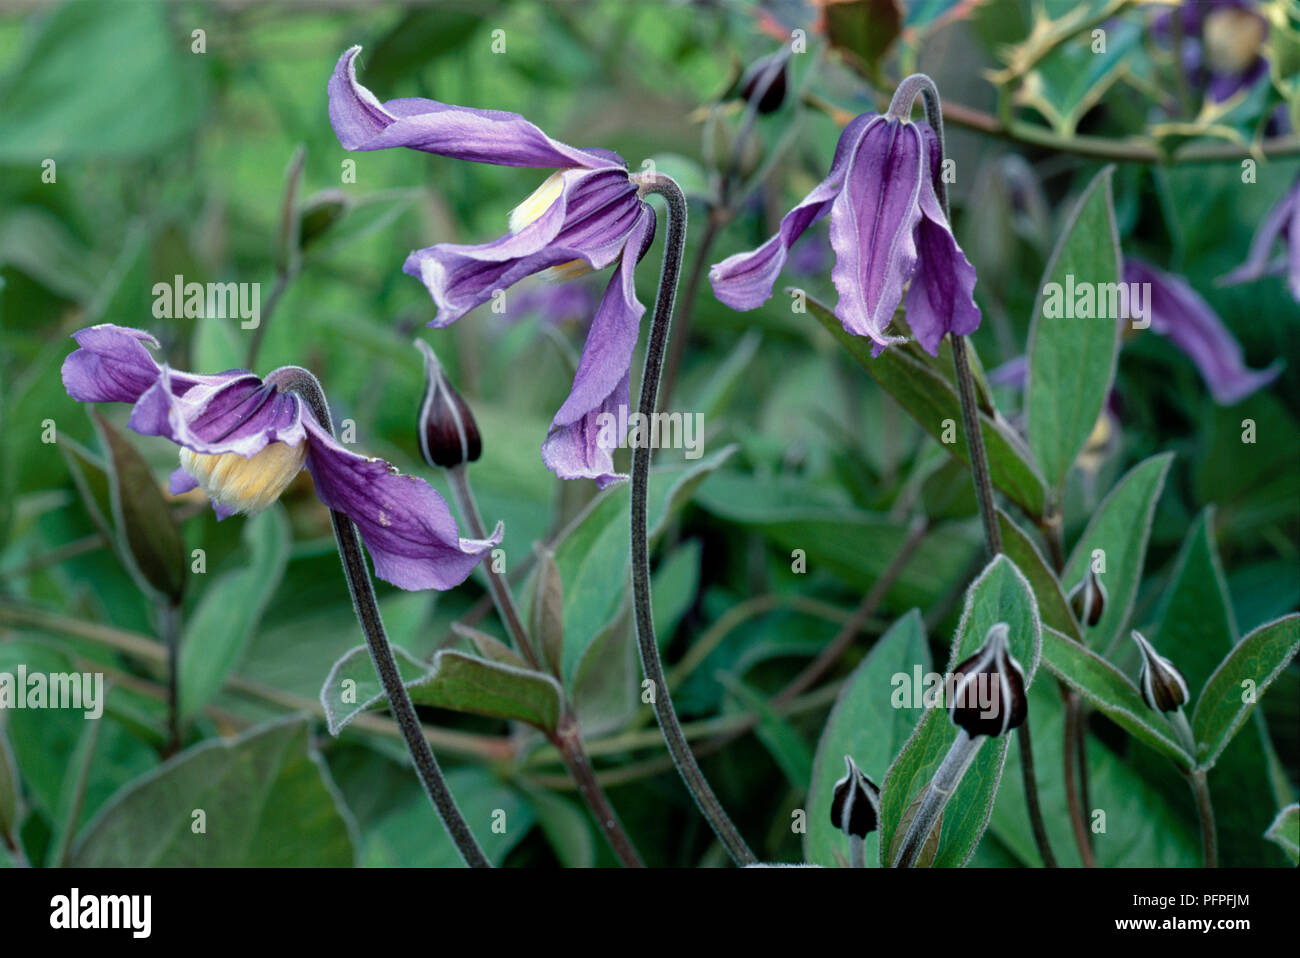 Clematis x eriostemon 'Hendersonii', montrant fleurs violettes, unfurled  bourgeons et feuilles vertes sur de hautes tiges, close-up Photo Stock -  Alamy